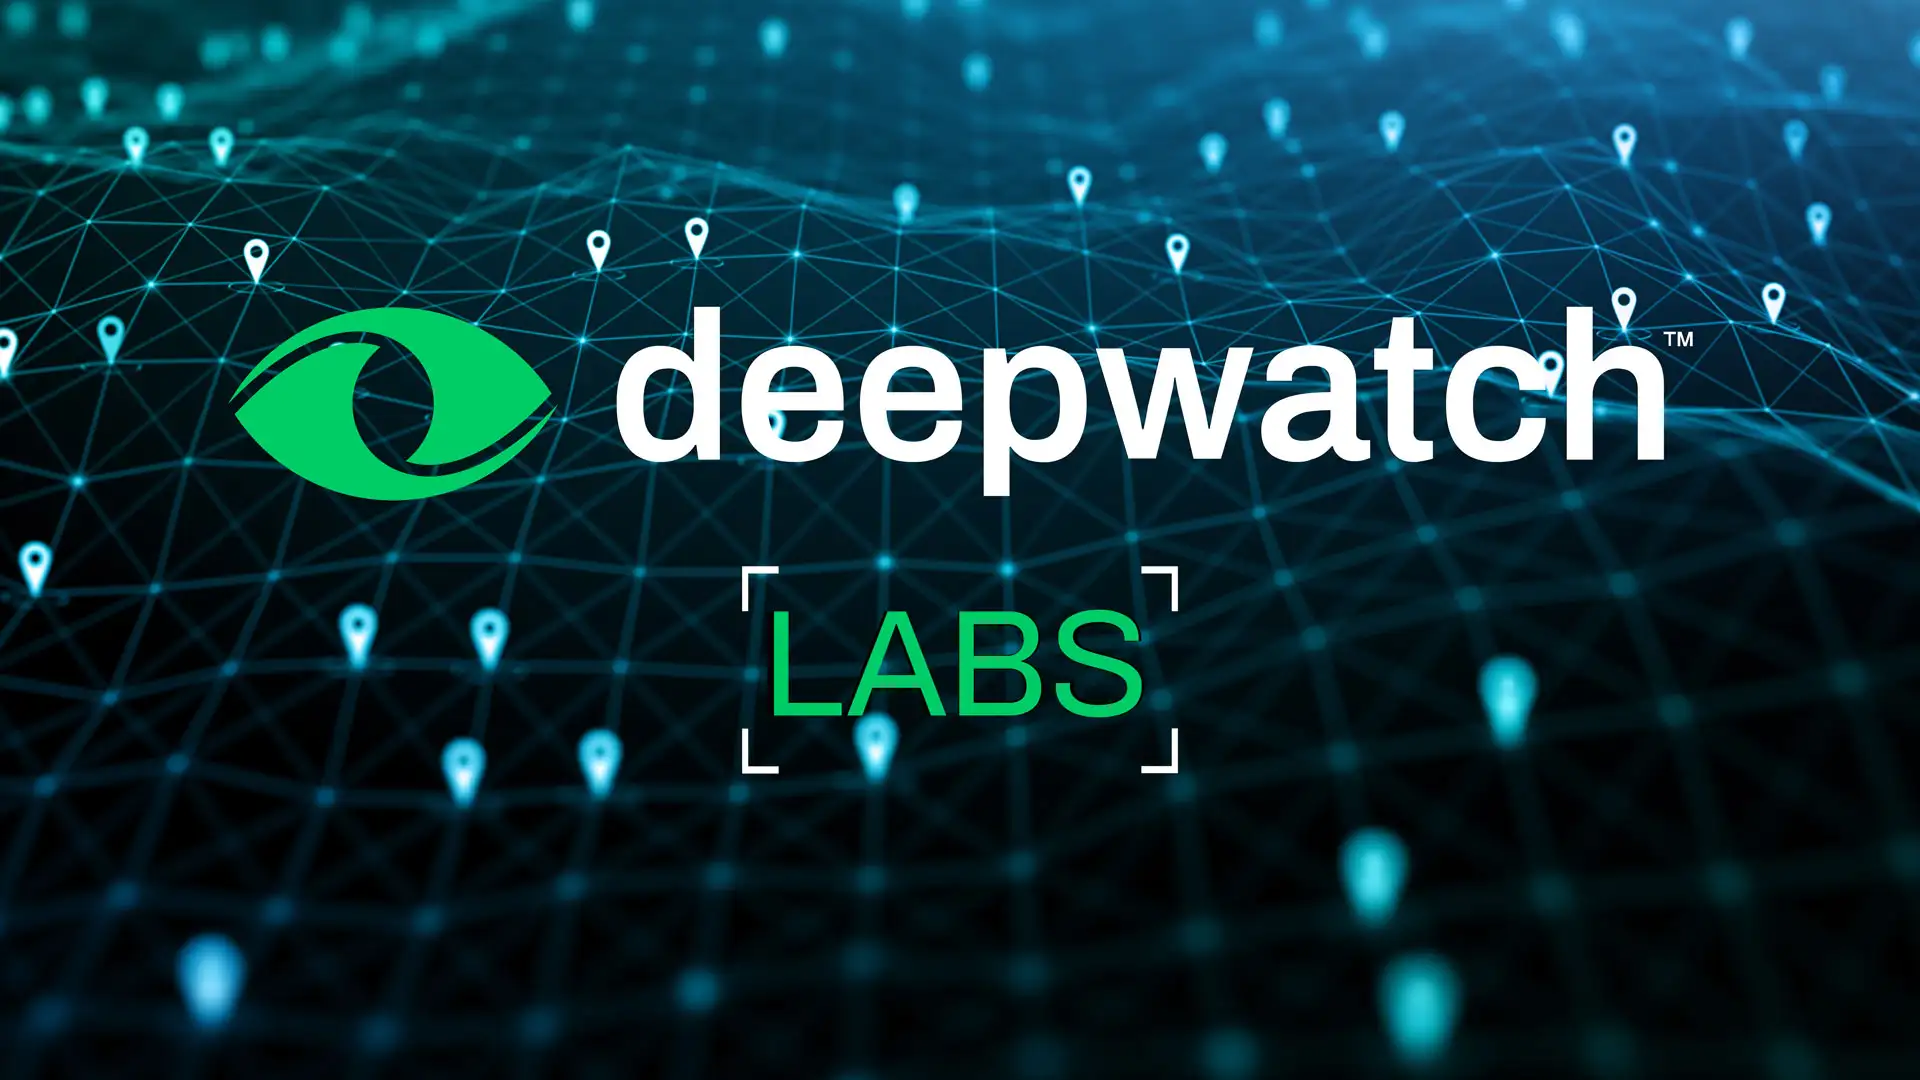 Deepwatch Labs